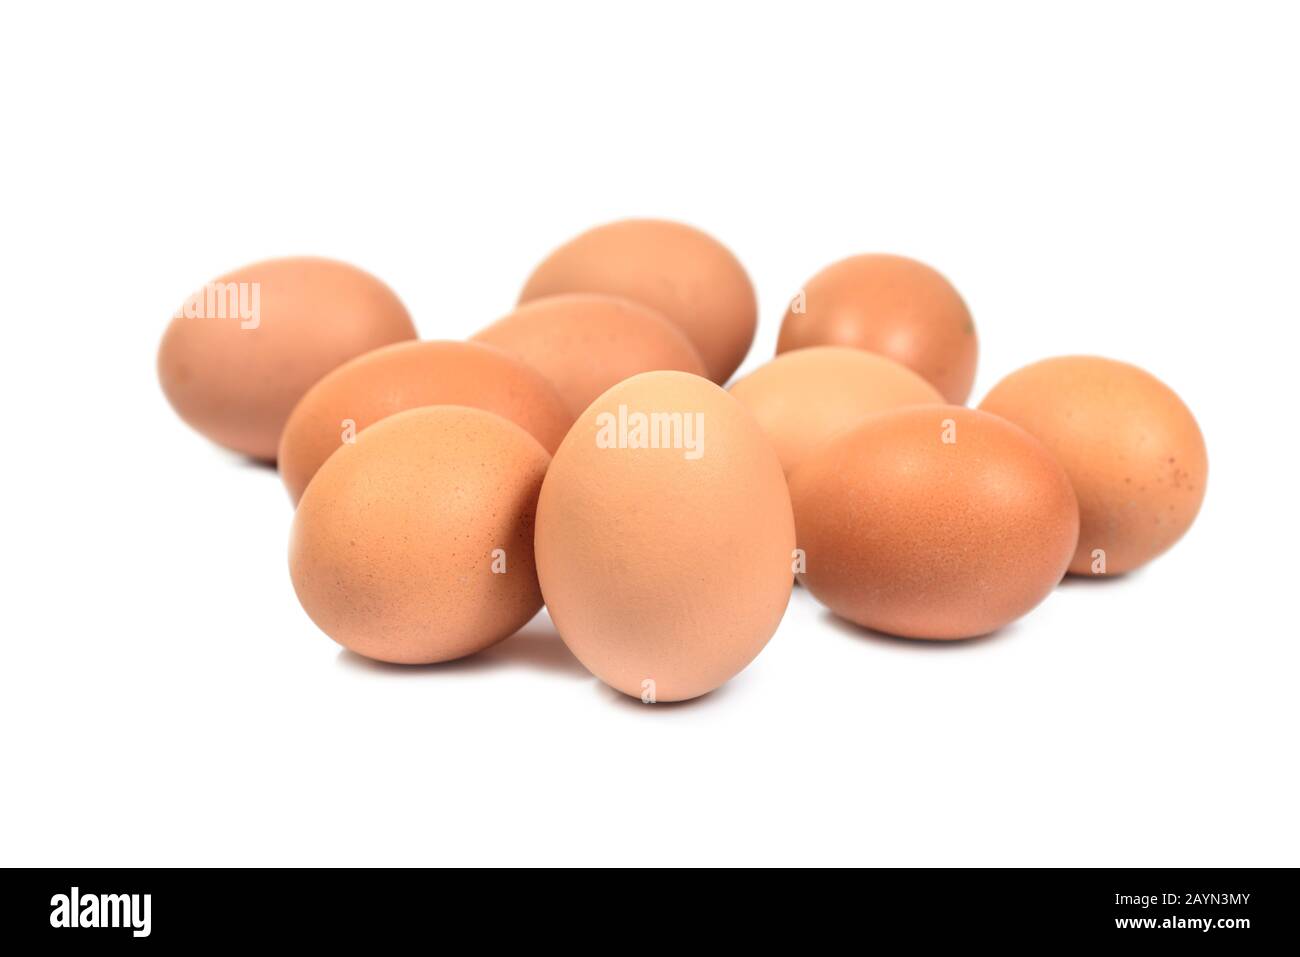 Nahgruppe von zehn Eiern, die auf weißem Hintergrund isoliert sind. Braune Eier ausgeschnitten. Osterkonzept Stockfoto